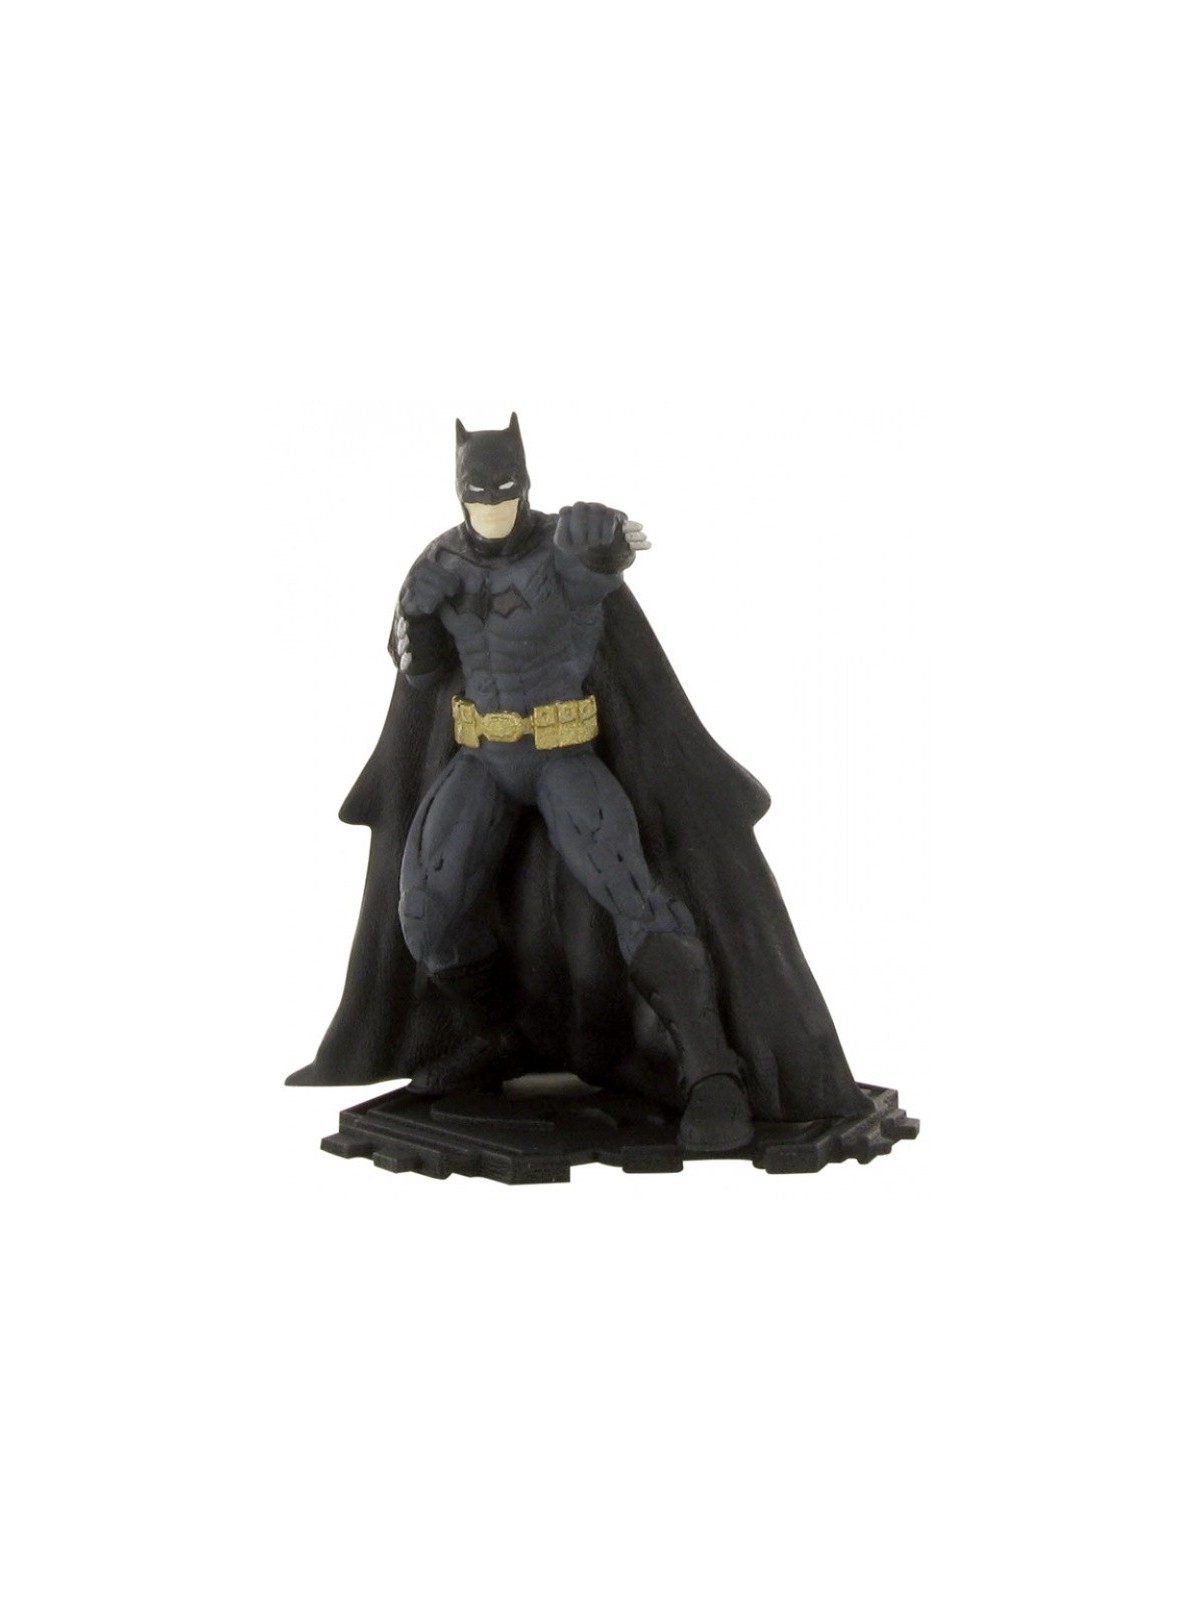 Dekorační figurka / 92 - Liga spravedlnosti - Batman 9,5cm